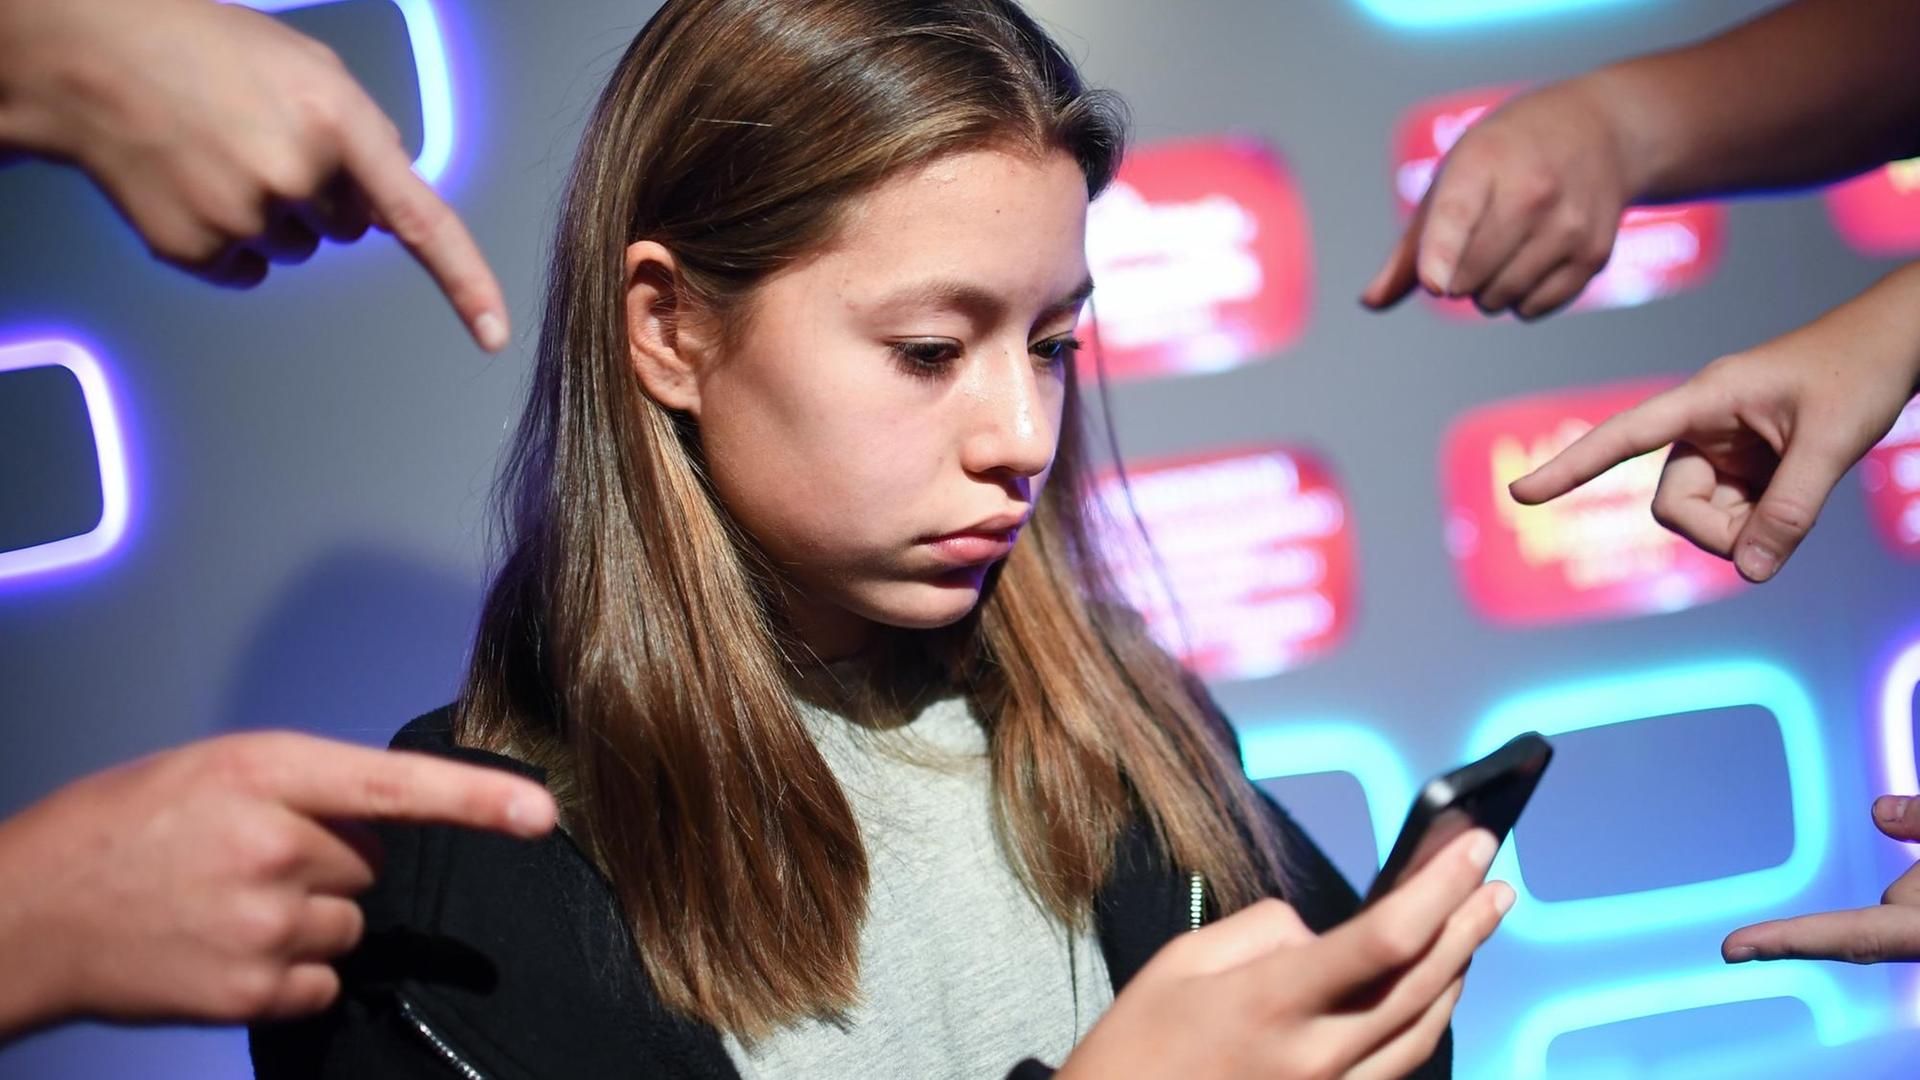 In einer gestellten Szene zeigen Schüler am 11.09.2017 in Berlin im Madame Tussauds beim "1. Symposium gegen Cybermobbing und für einen sicheren Umgang mit sozialen Medien" mit dem Finger auf eine andere Schülerin.